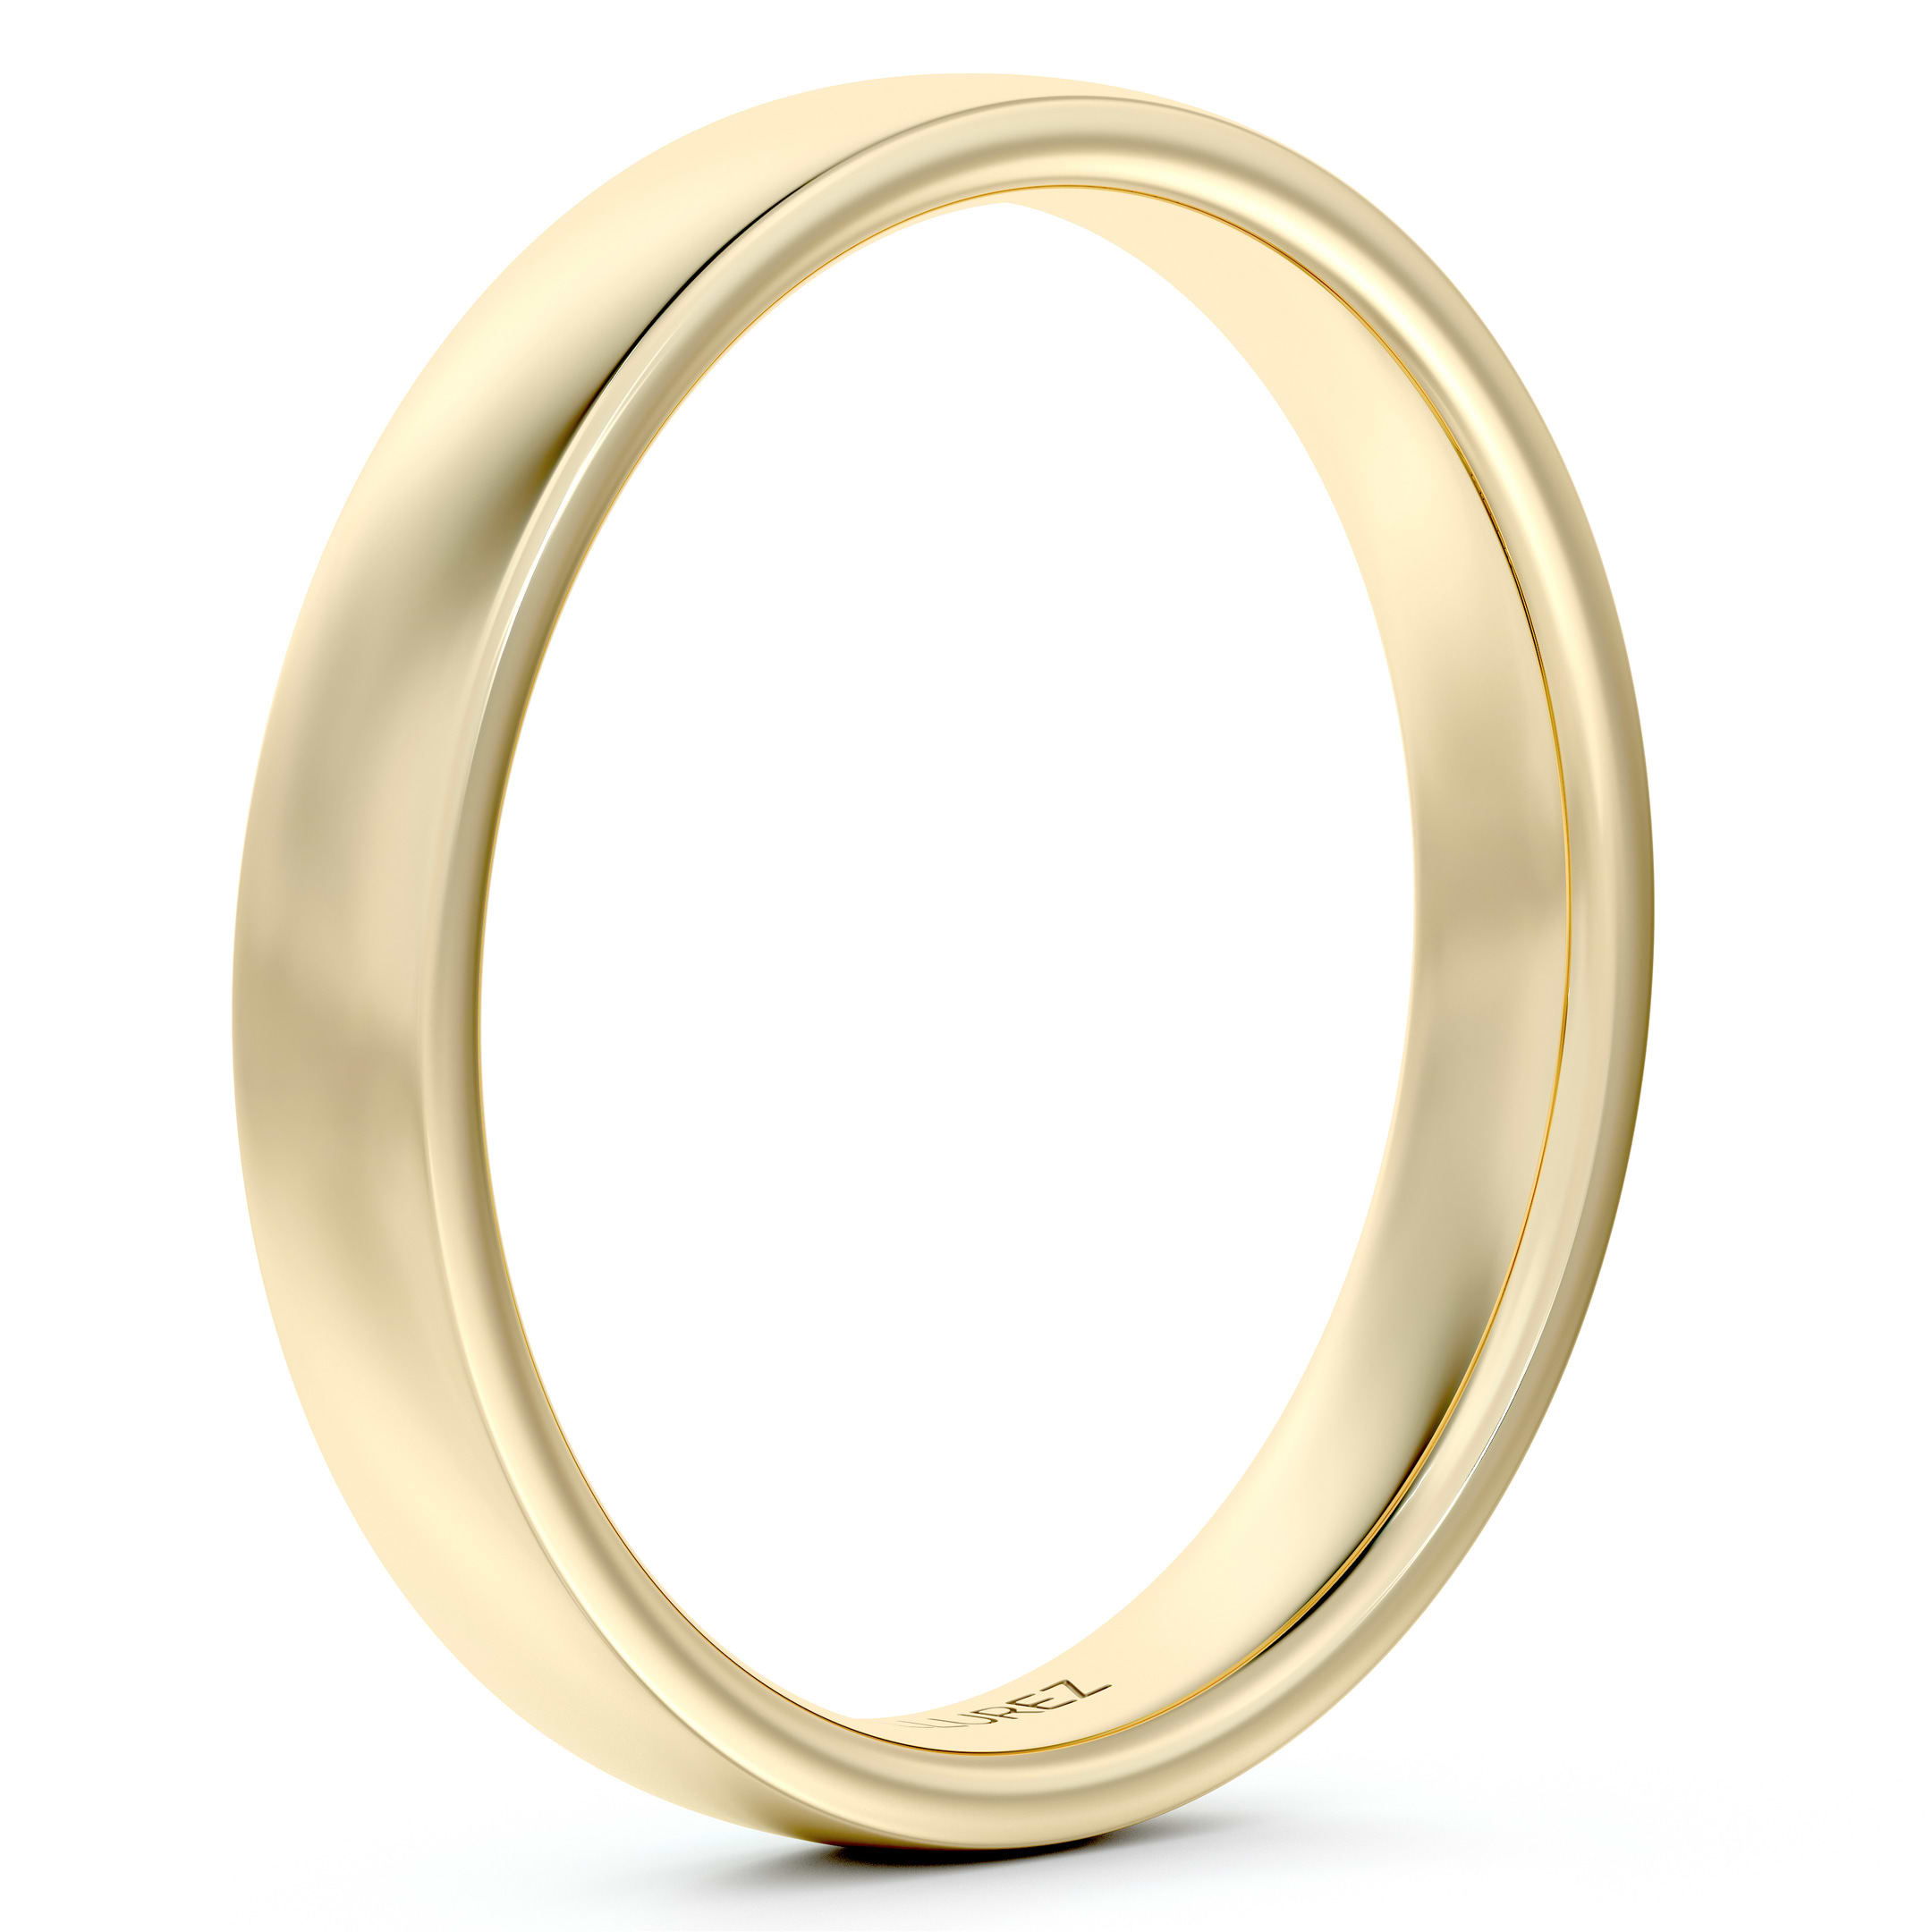  Mguotp Comfort Fit Ring Women Fake Wedding Ring Luxury